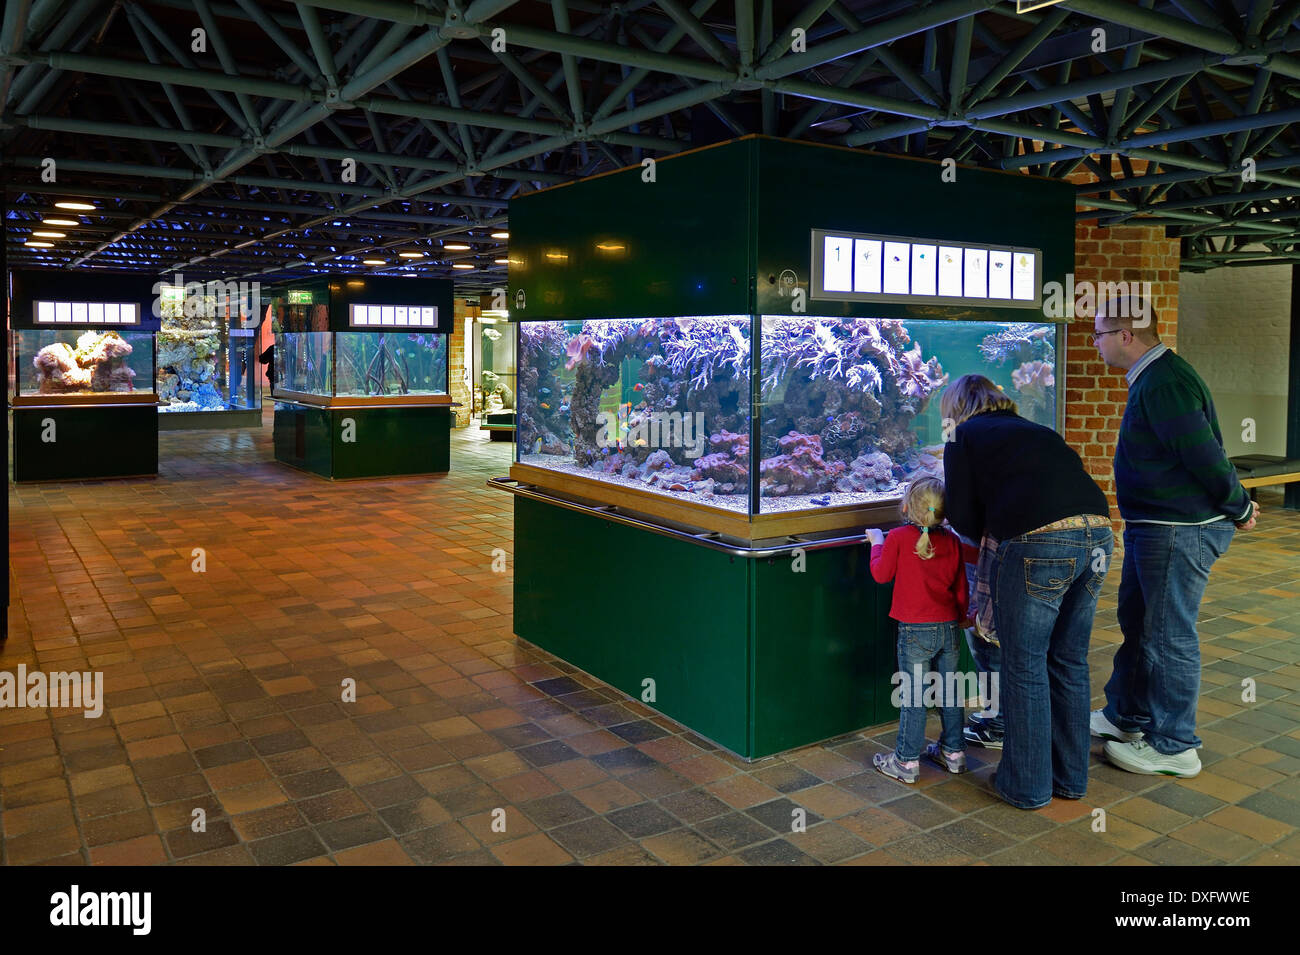 Visites à l'aquarium, Meeresmuseum, Musée Océanographique, ville hanséatique de Stralsund, Mecklembourg-Poméranie-Occidentale, Allemagne Banque D'Images